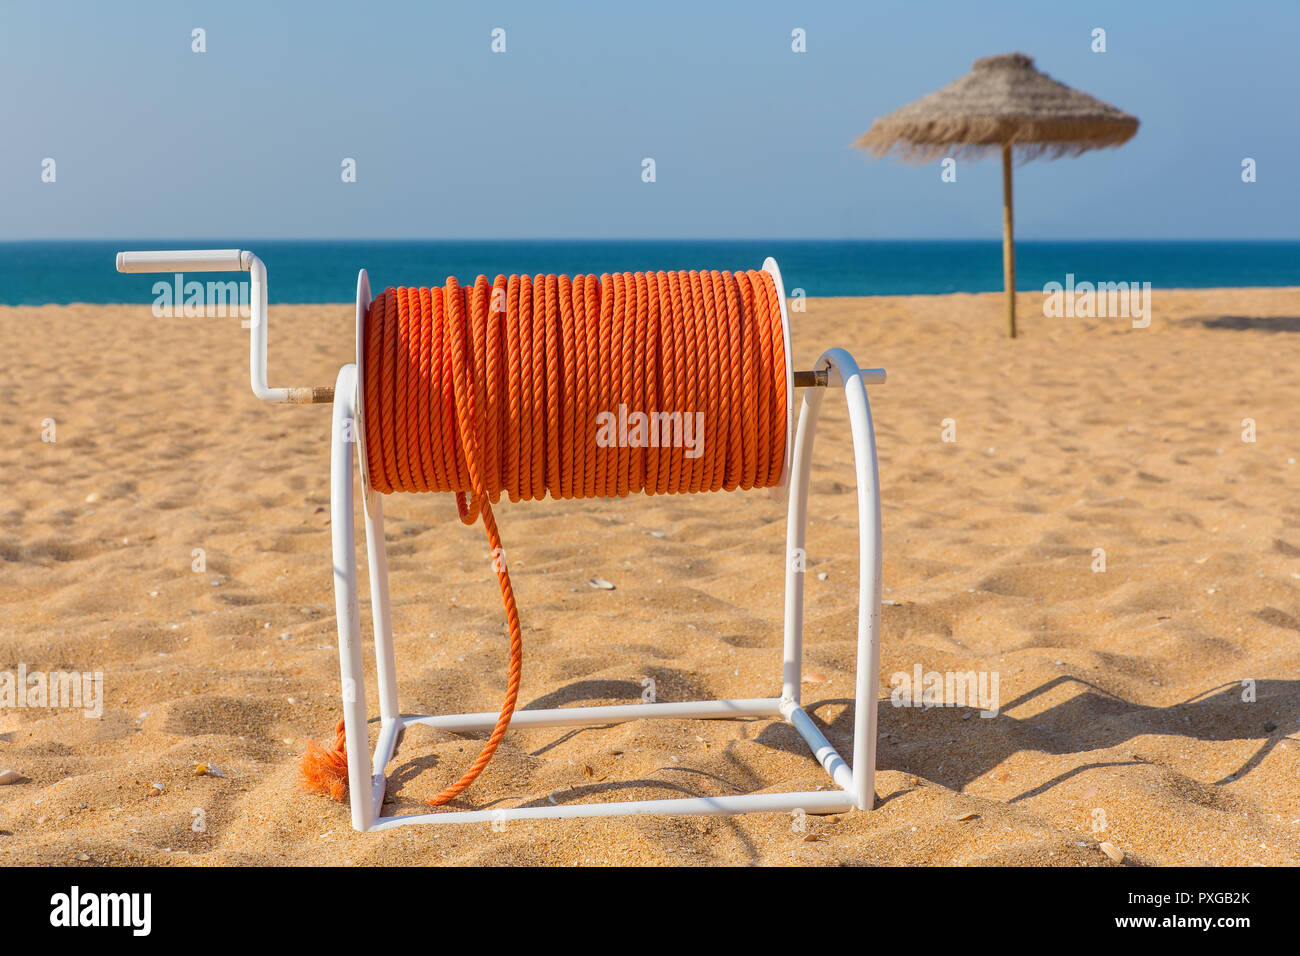 Bobine avec corde de sauvetage orange sur plage avec parasol et de la mer Banque D'Images